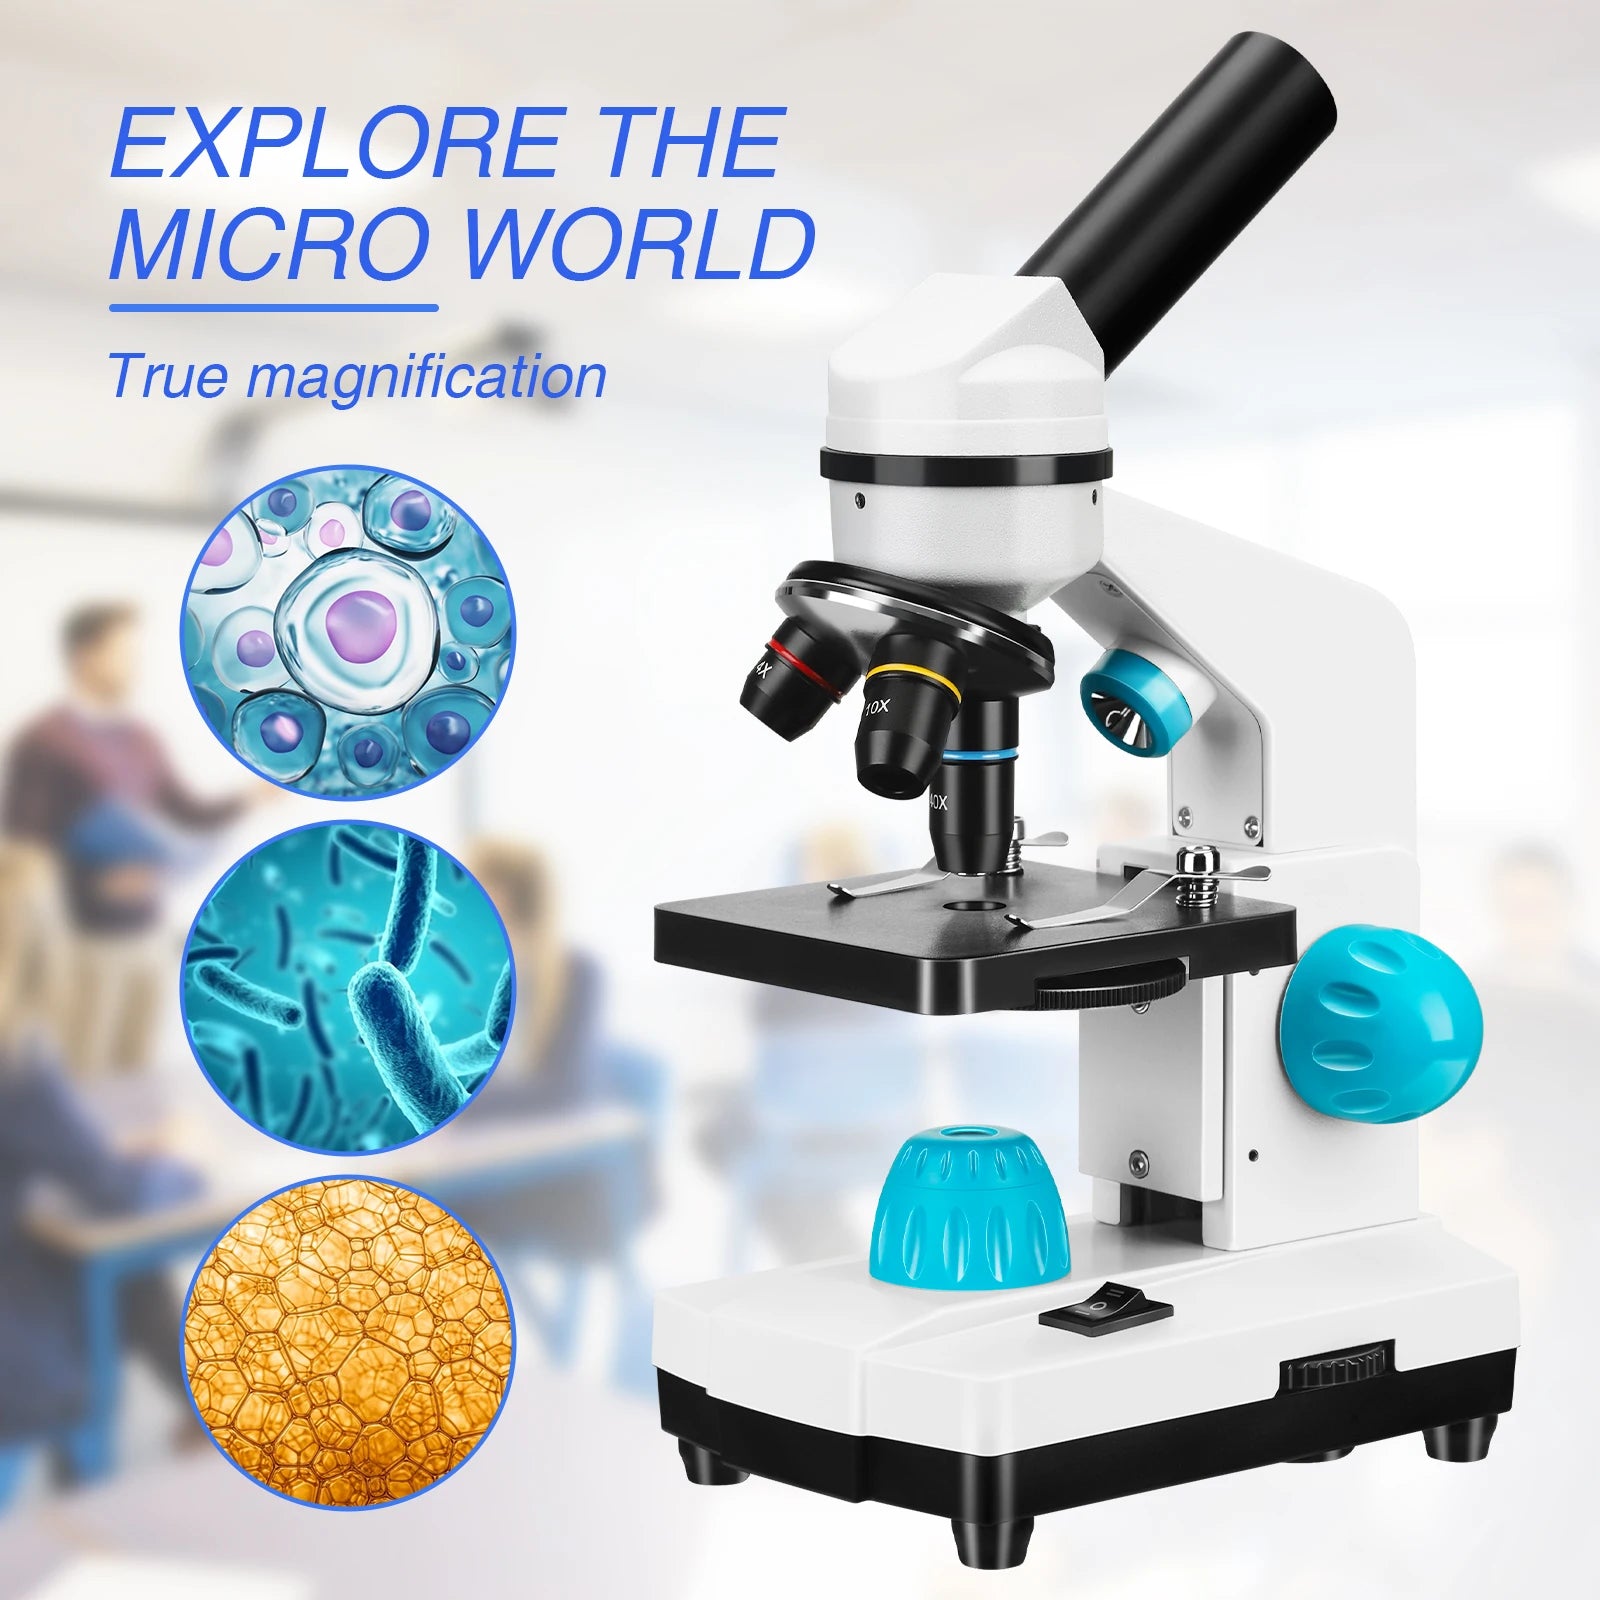 Biologische microscopen, 100X-2000X vergroting, telefoonadapter